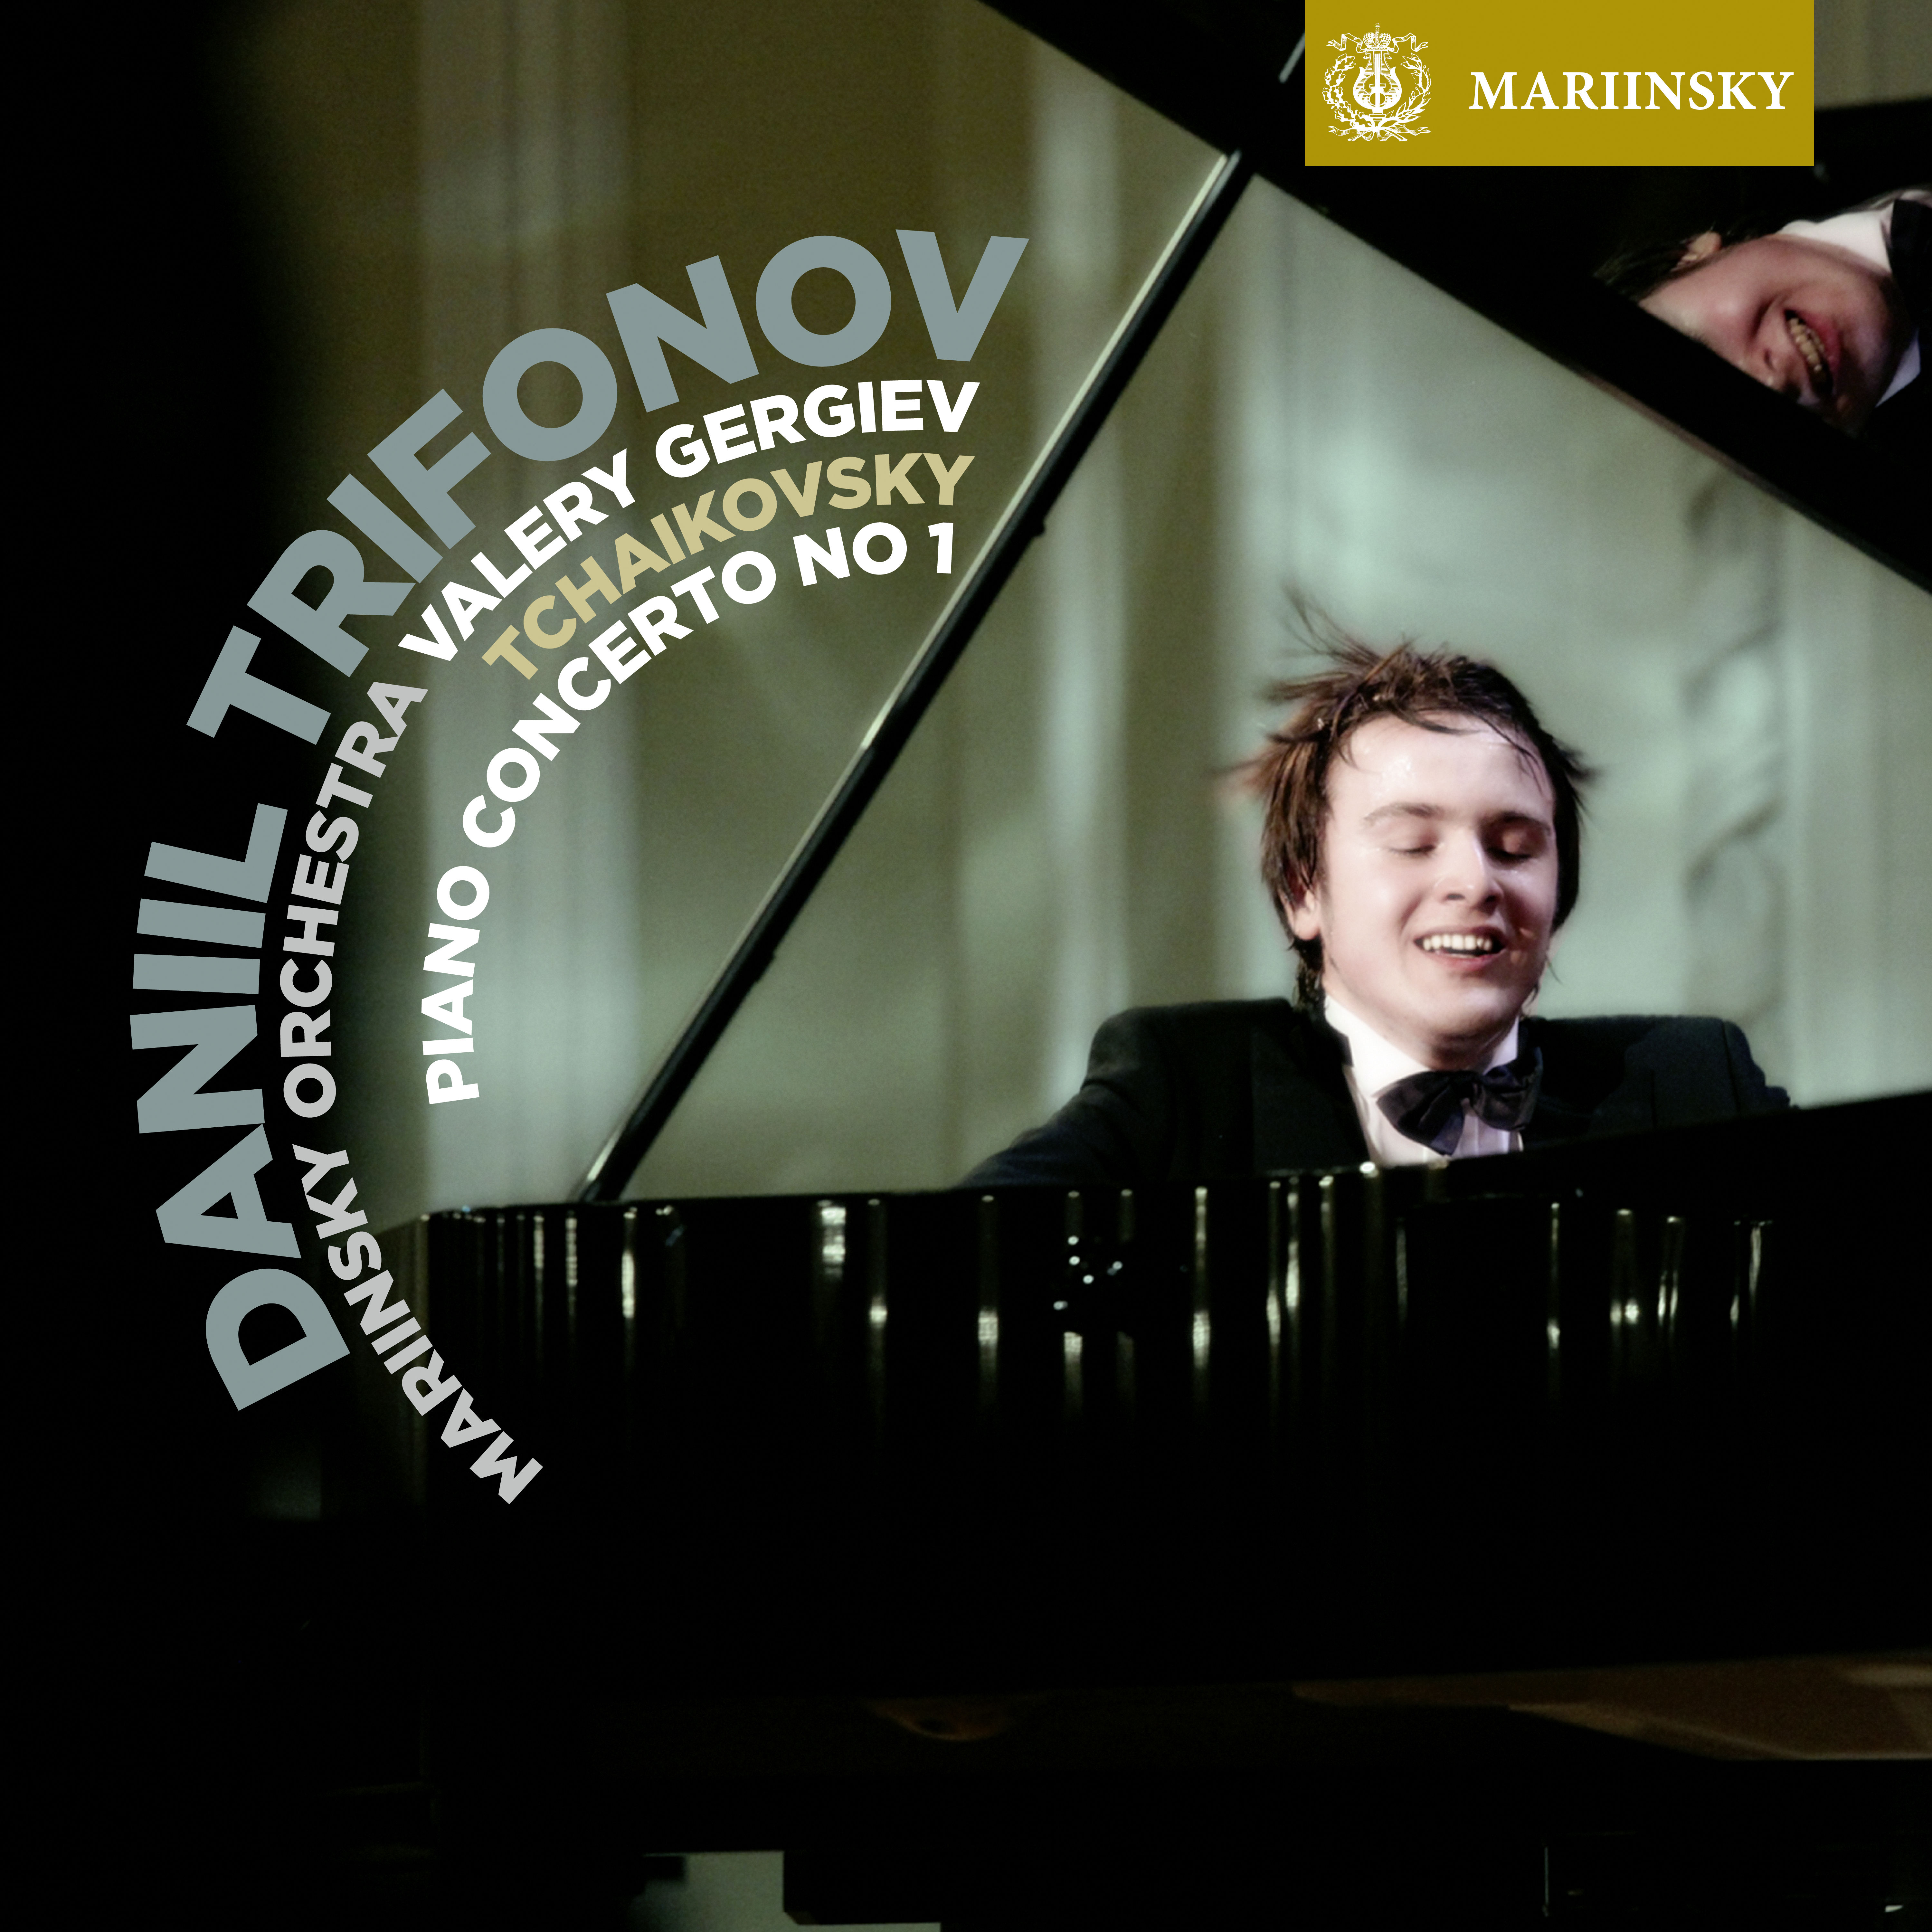 Valery Gergiev, Daniil Trifonov - Tchaikovsky: Piano Concerto No. 1 (2012) [FLAC 24bit/96kHz]